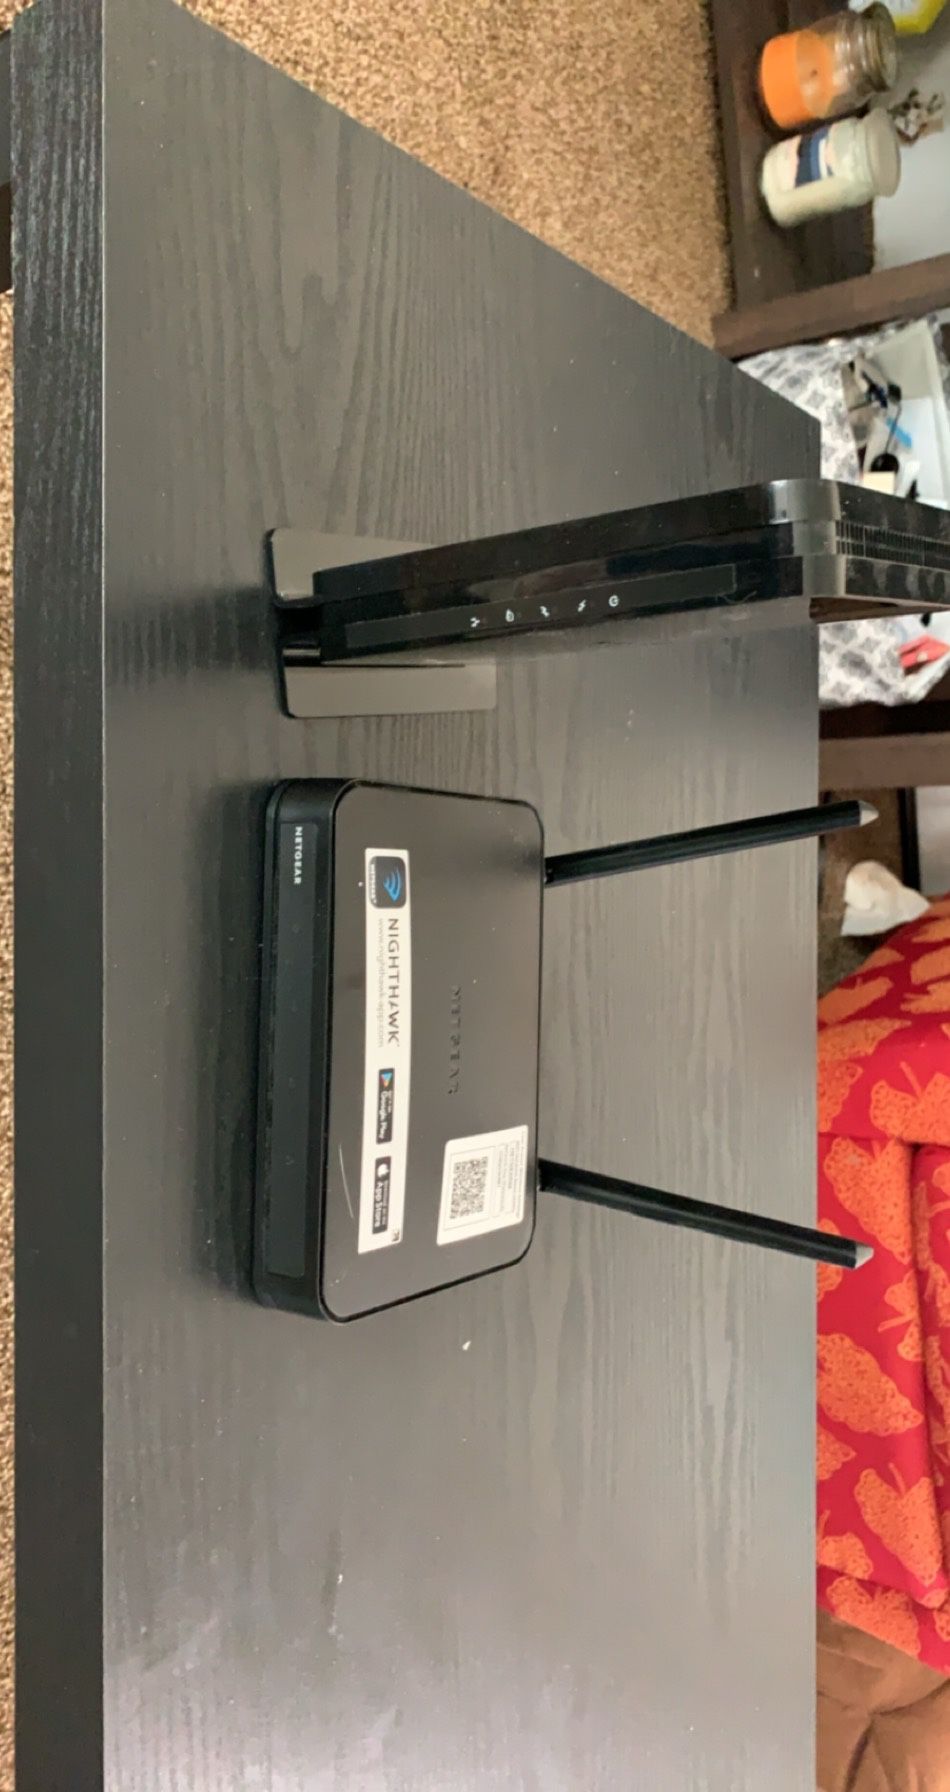 Netgear WiFi router and Netgear modem